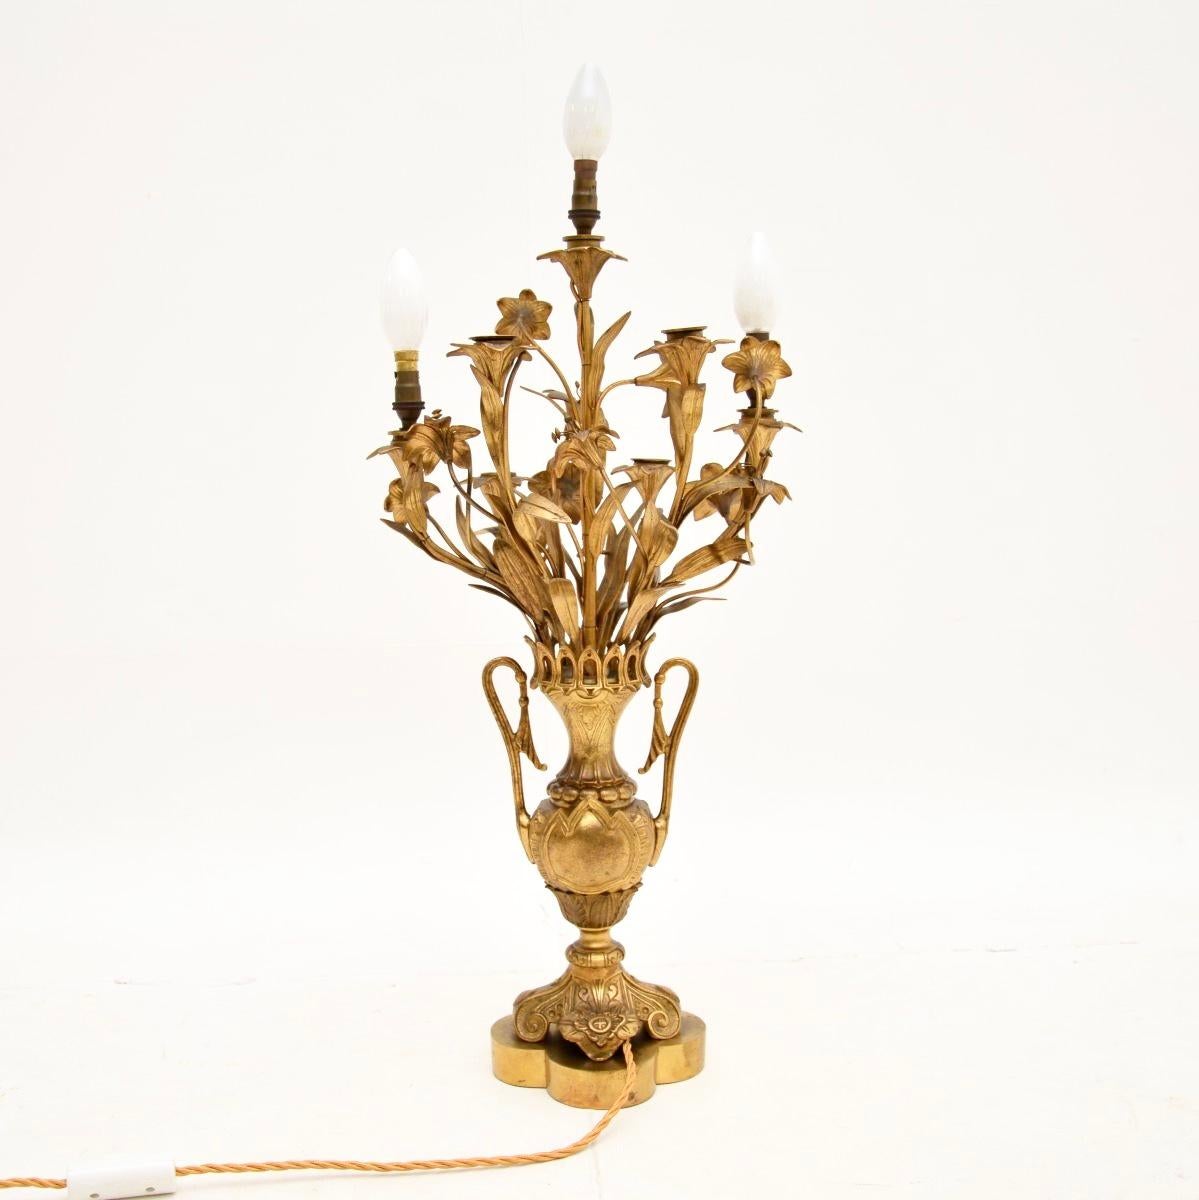 Une superbe lampe de table ancienne en bronze doré. Fabriqué en France, il date des années 1900-1910.

Il est d'une très grande qualité, il est très lourd et bien fait. La base en forme d'urne est ornée de magnifiques détails. La partie supérieure